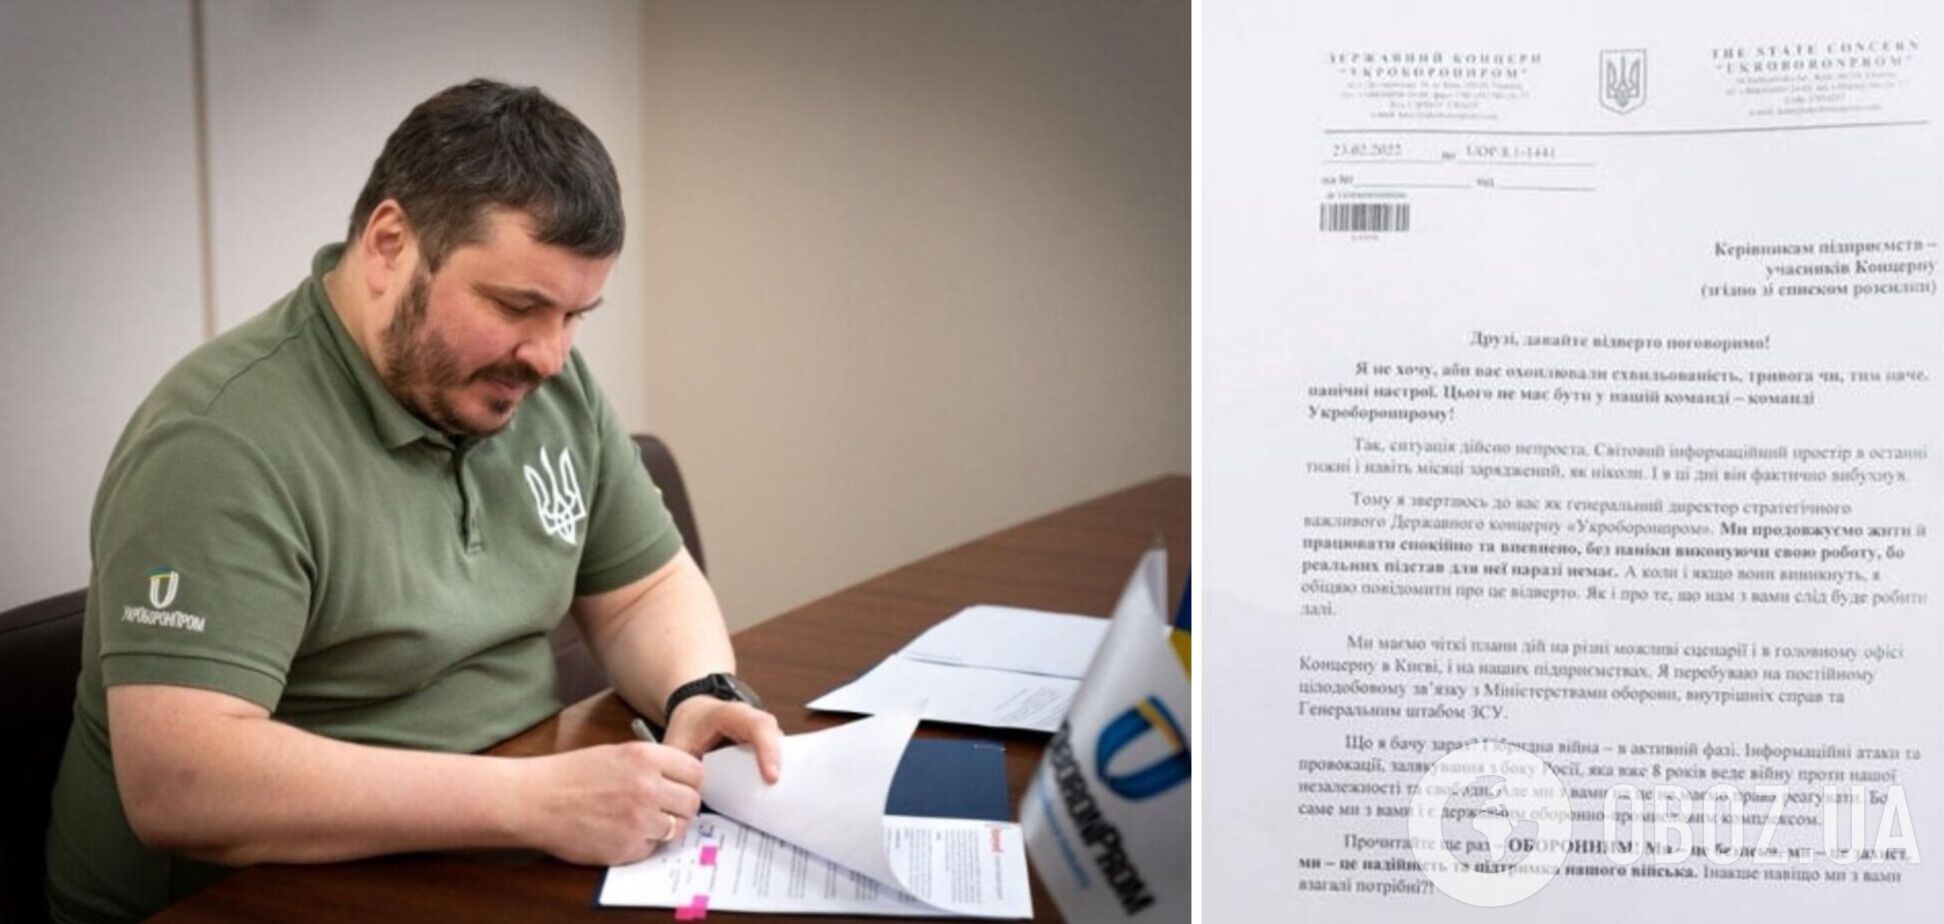 План дій є: ЗМІ дізналися про заспокійливий лист Гусєва підприємствам 'Укроборонпрому' 23 лютого 2022 року